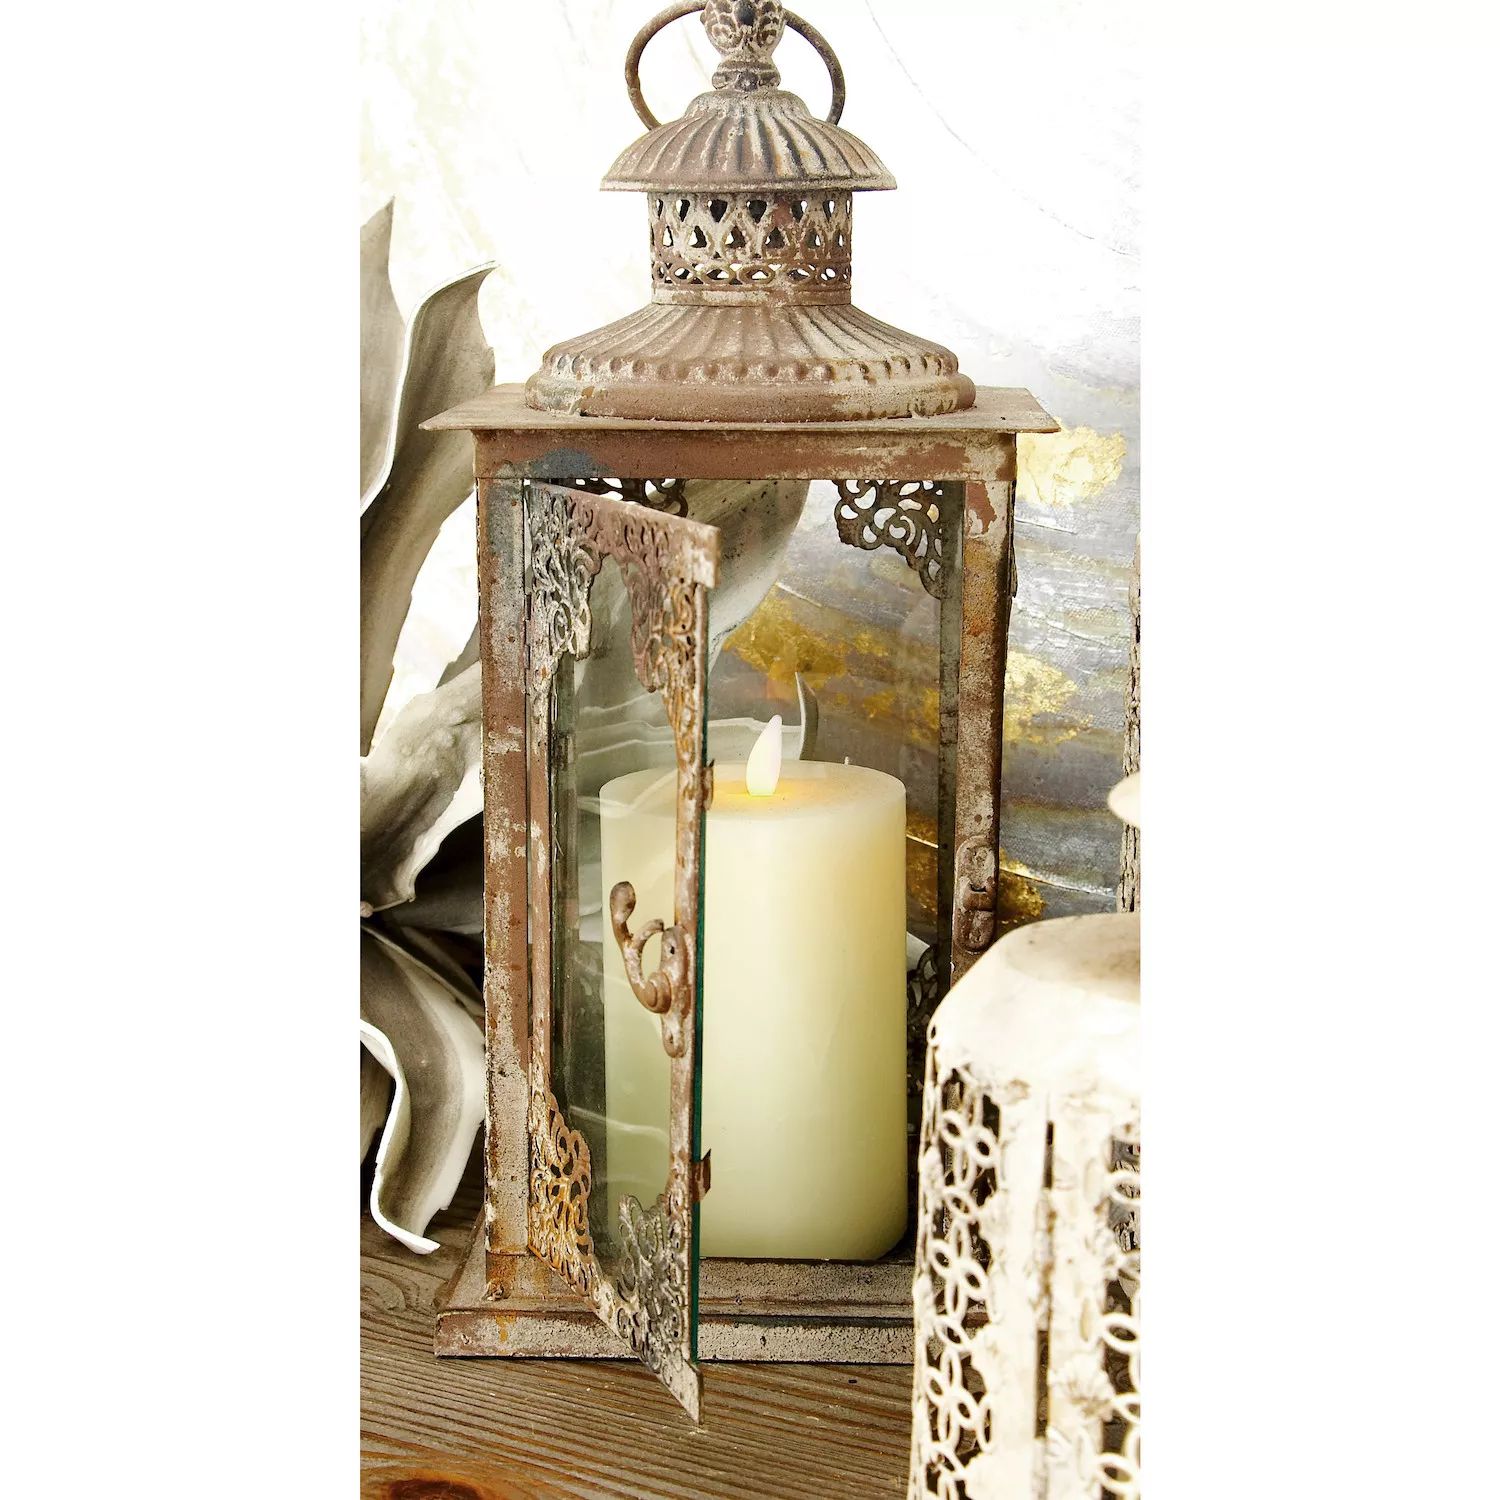 Stella & Eve Wax беспламенные свечи, набор из 3 предметов набор подсвечников primavere madonna venere боттичелли museum parastone pr ts03bo 113 108011